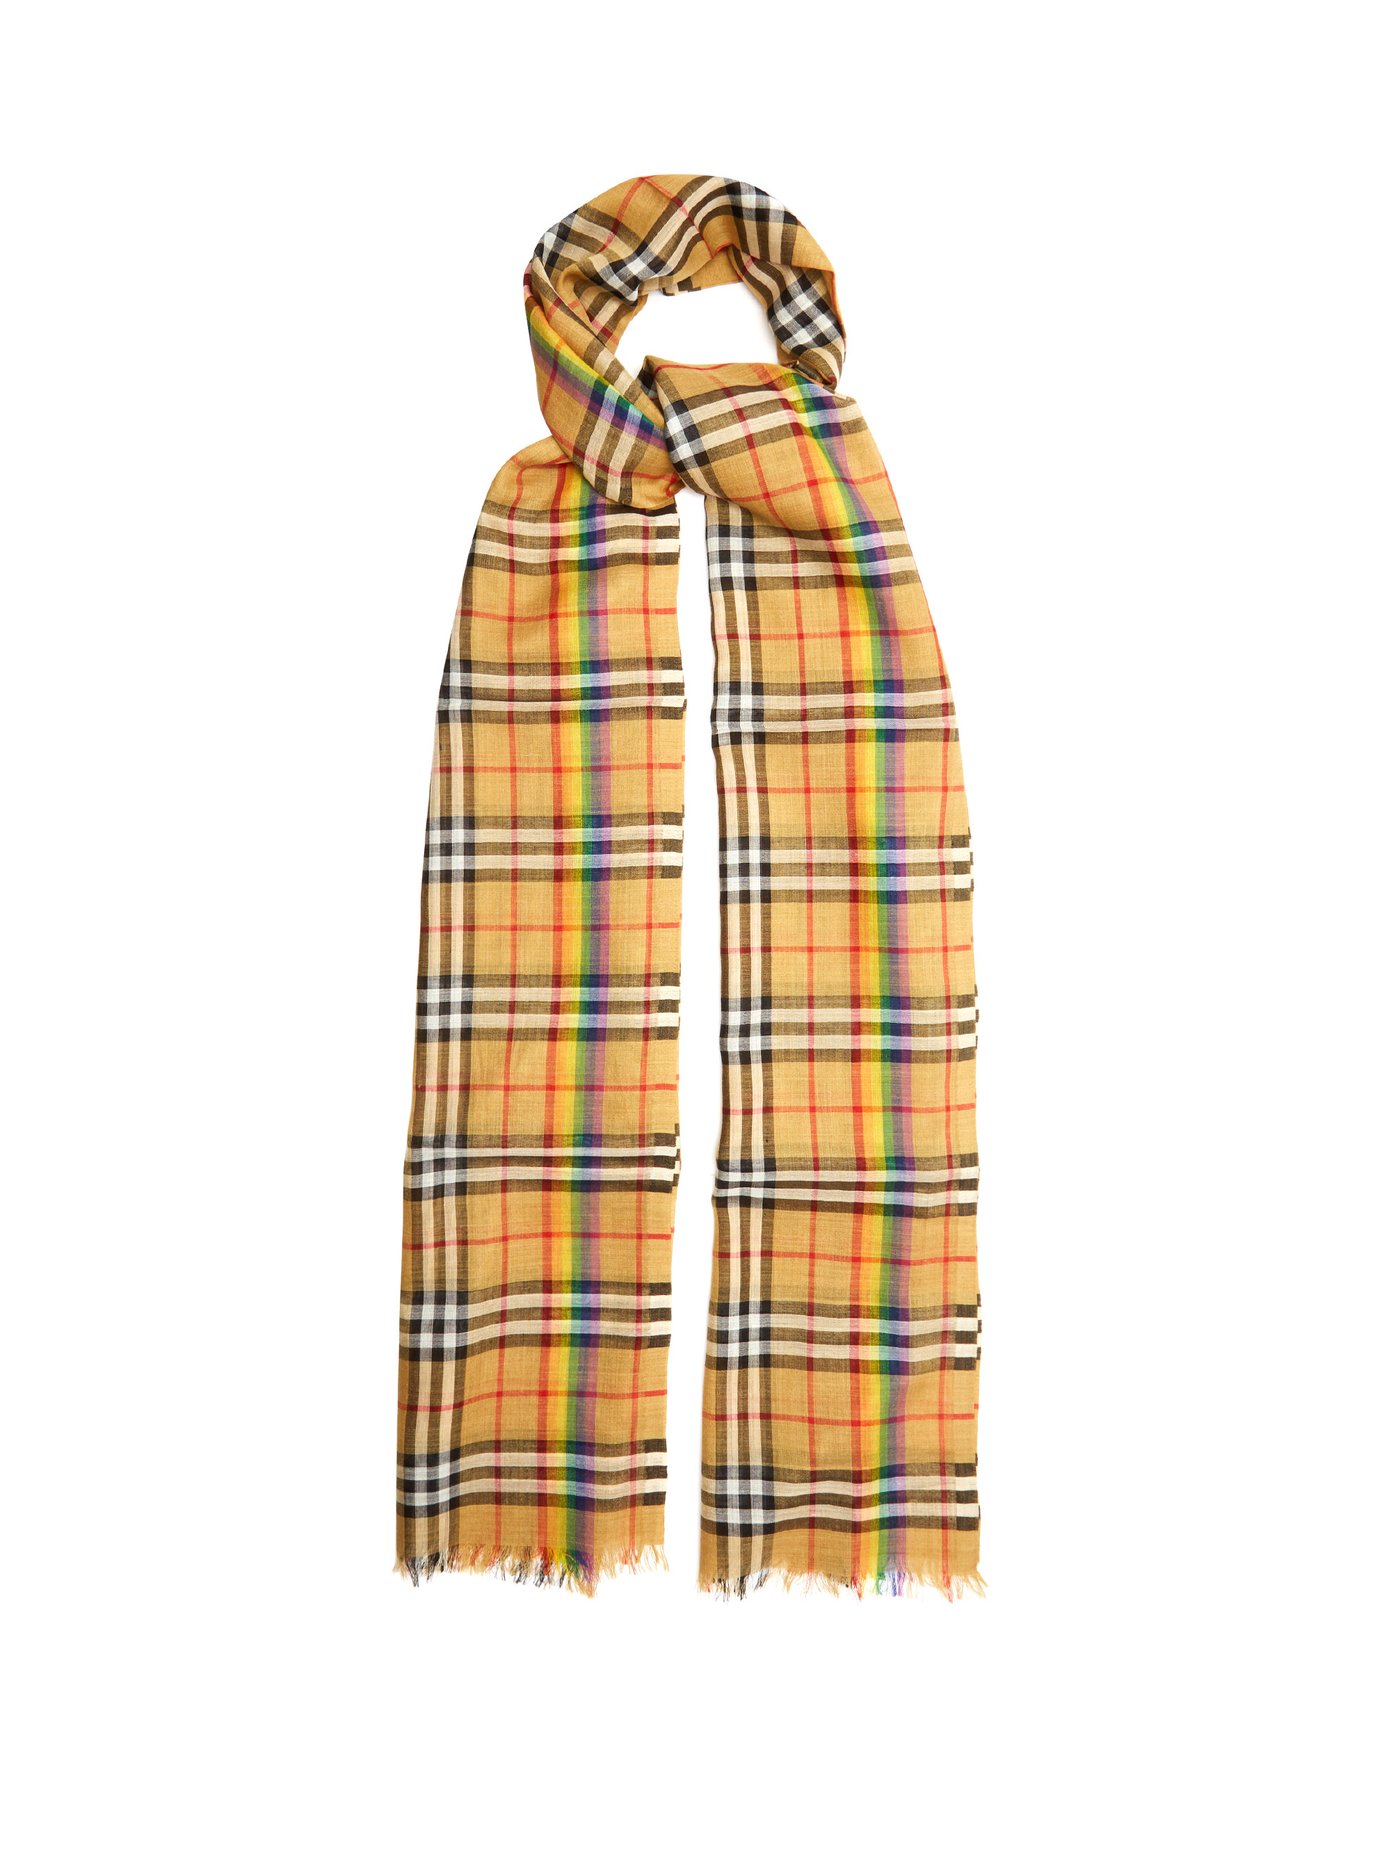 burberry scarf rainbow